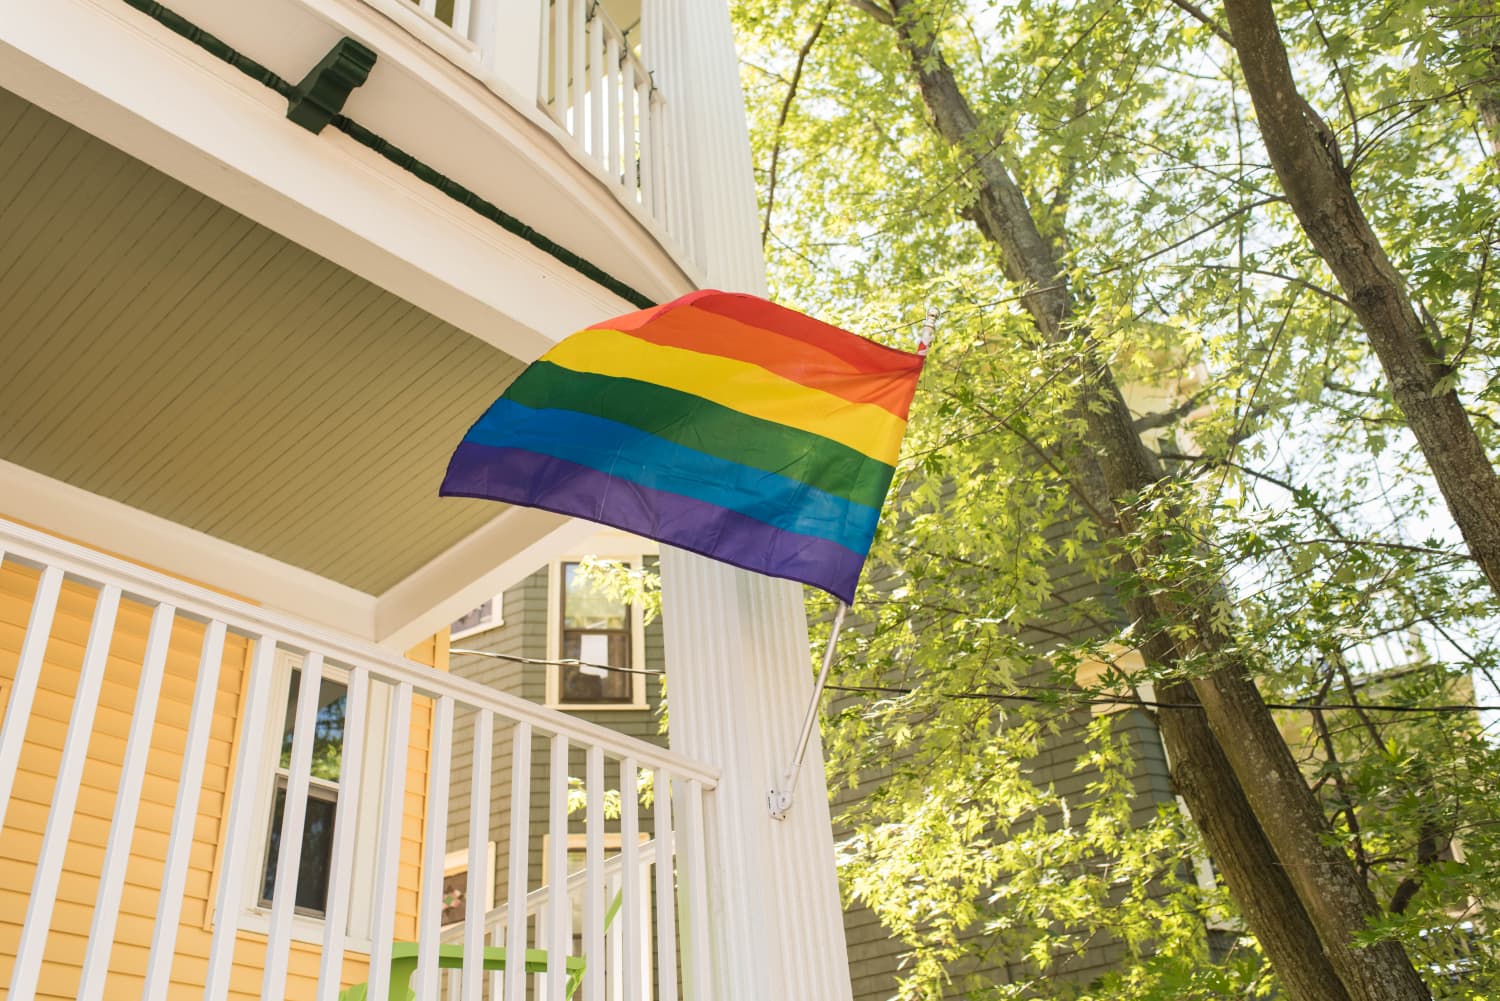 Why I Installed a Rainbow Flag on my House